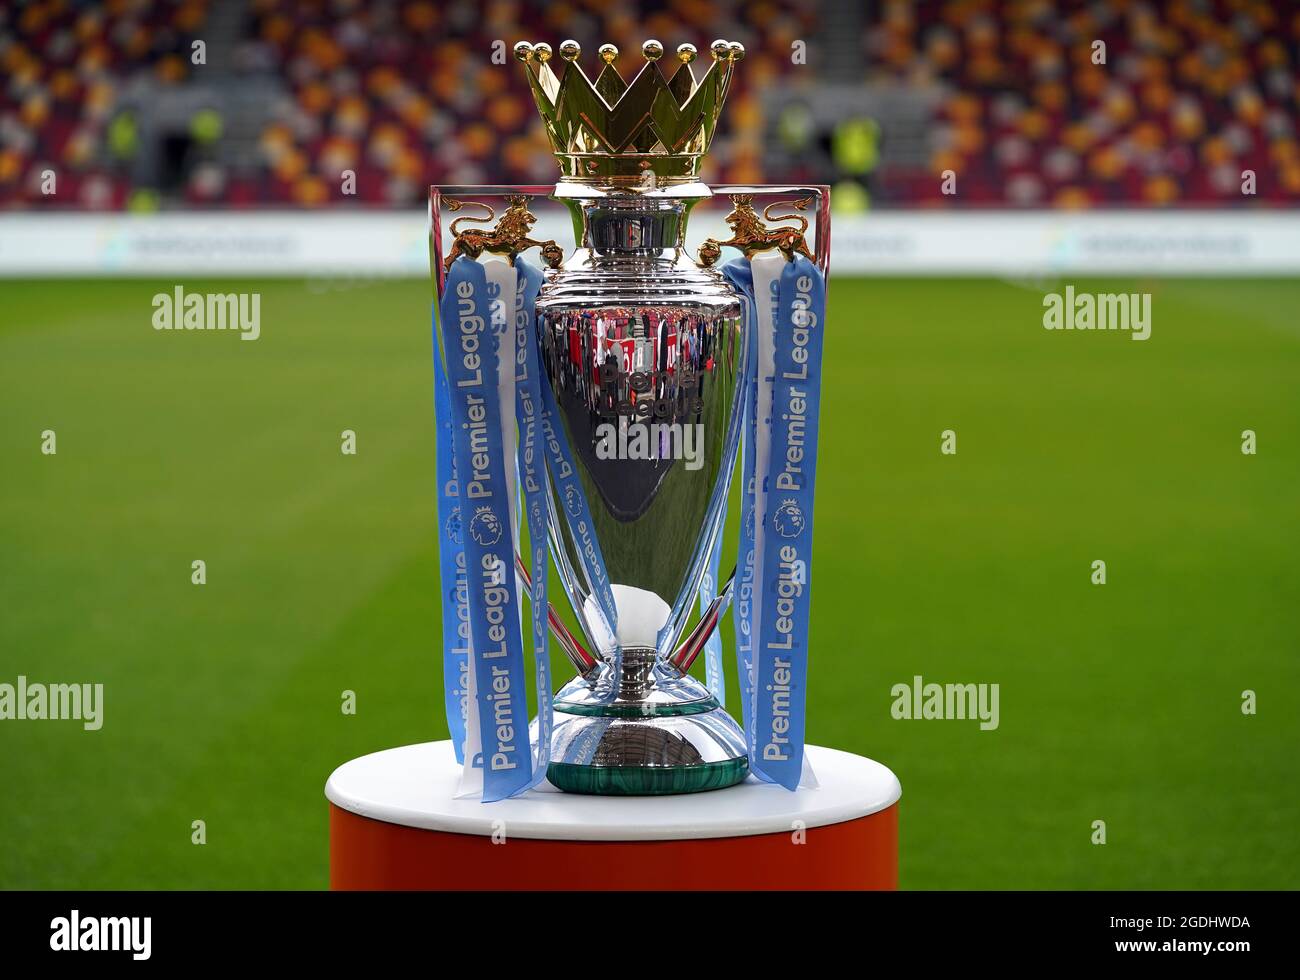 El trofeo de la Premier League en un lugar del partido de la League en el Brentford Community Stadium, Londres. Fecha de la foto: 13 de agosto de 2021